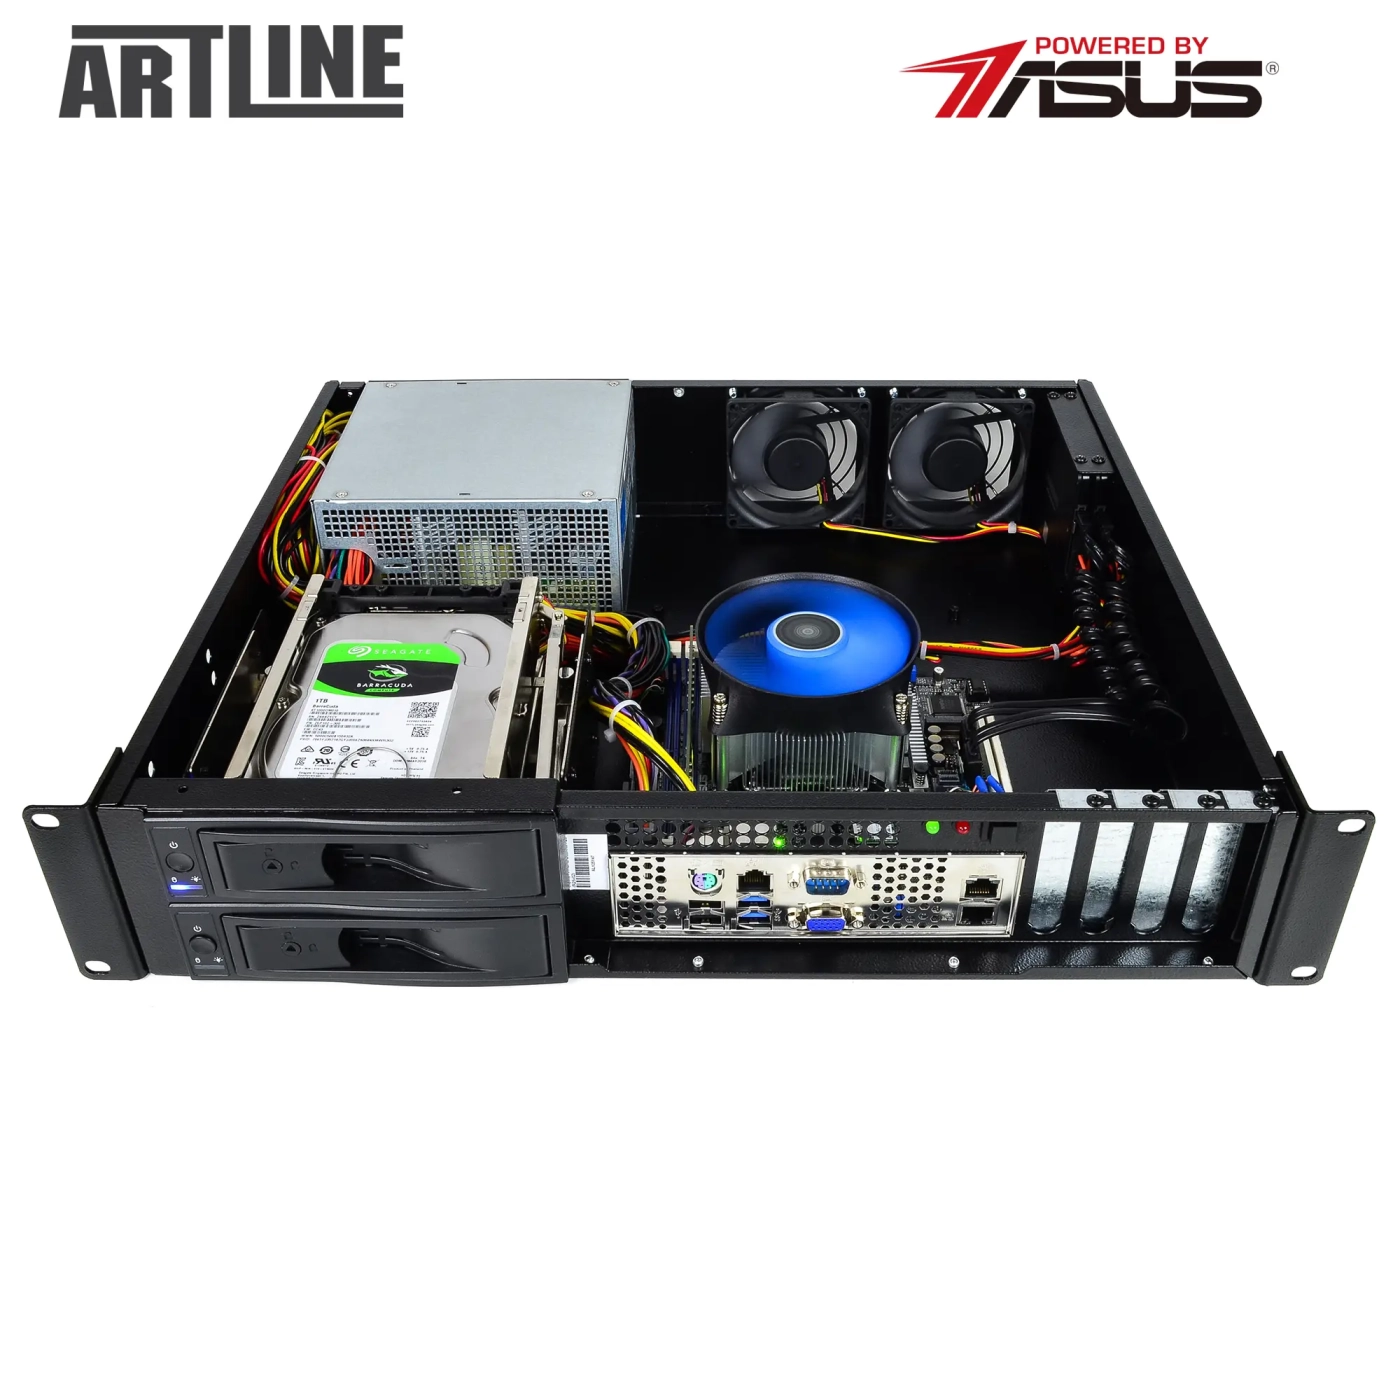 Купить Сервер ARTLINE Business R37 (R37v66) - фото 9